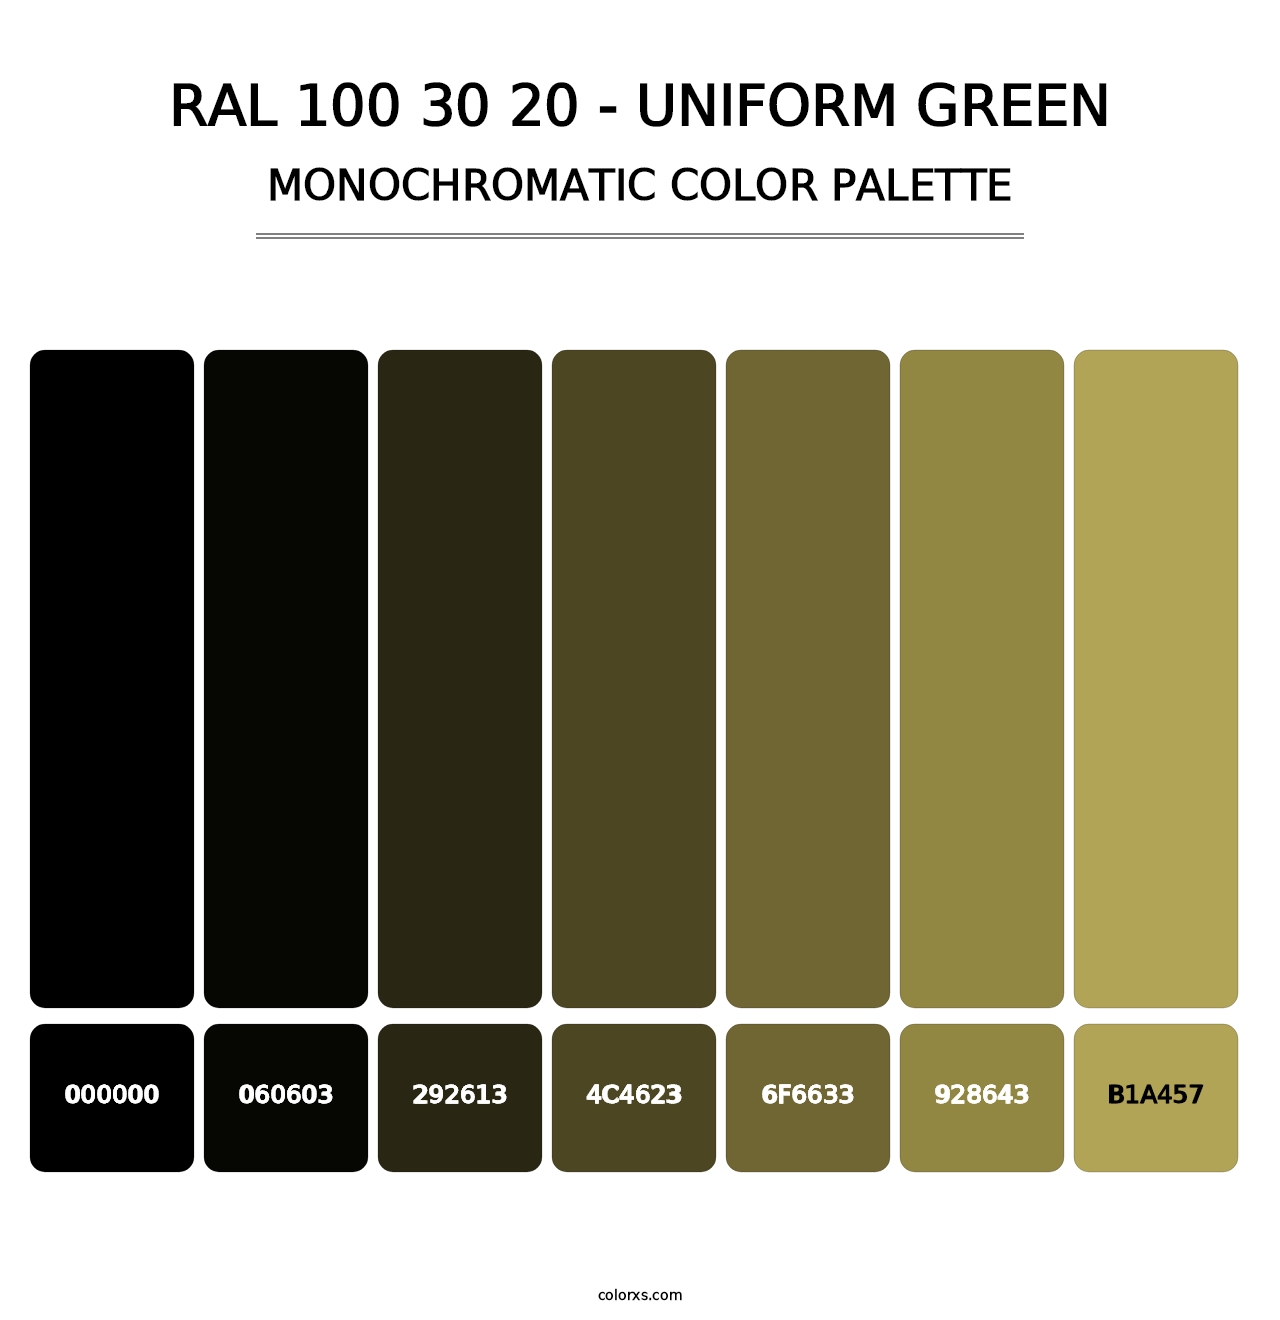 RAL 100 30 20 - Uniform Green - Monochromatic Color Palette